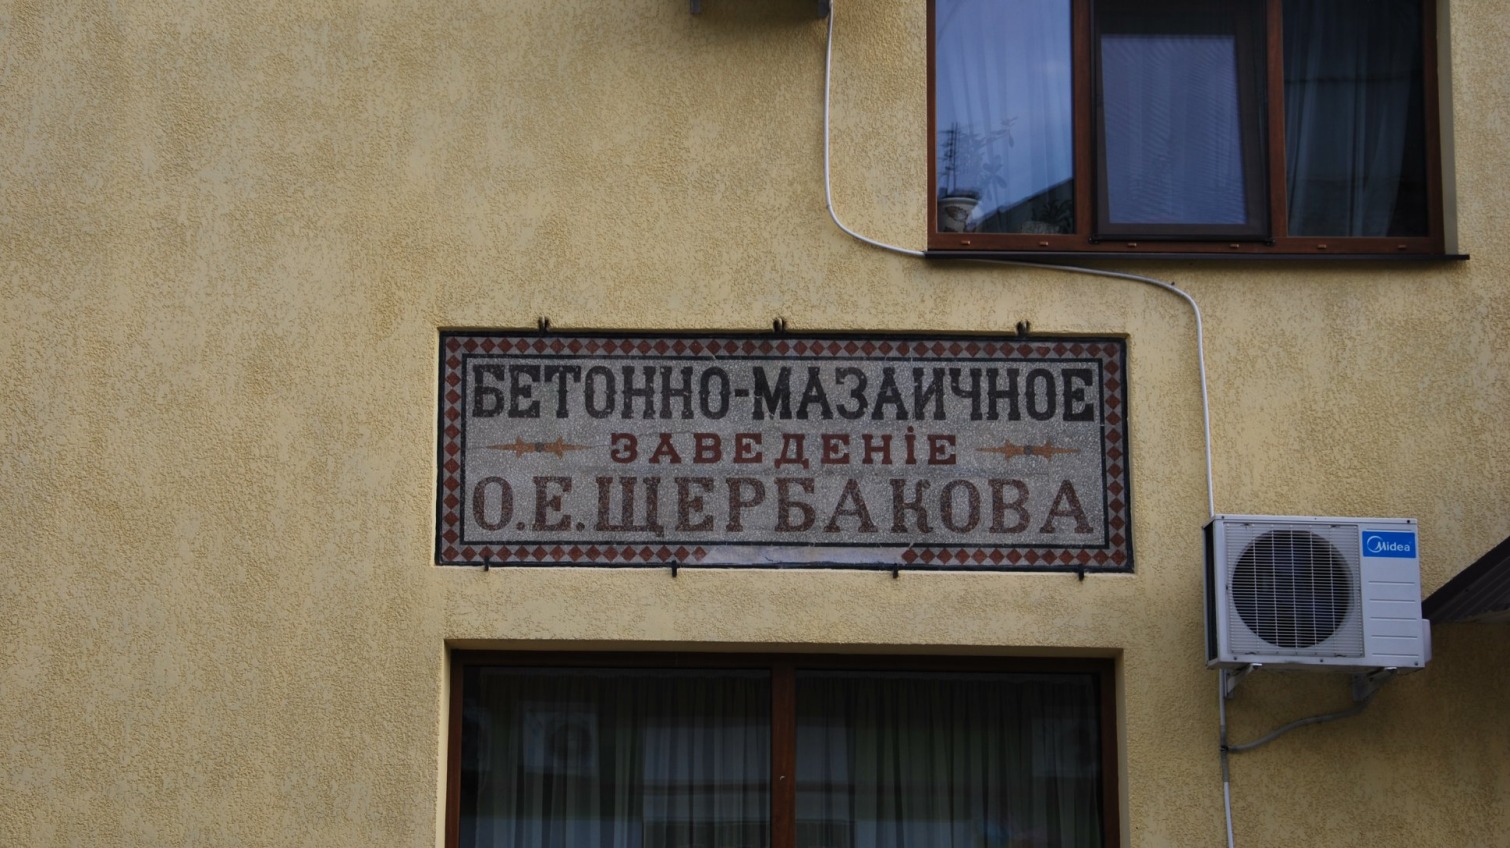 Поучительная история одной из древнейших рекламных мозаик в Одессе «фото»